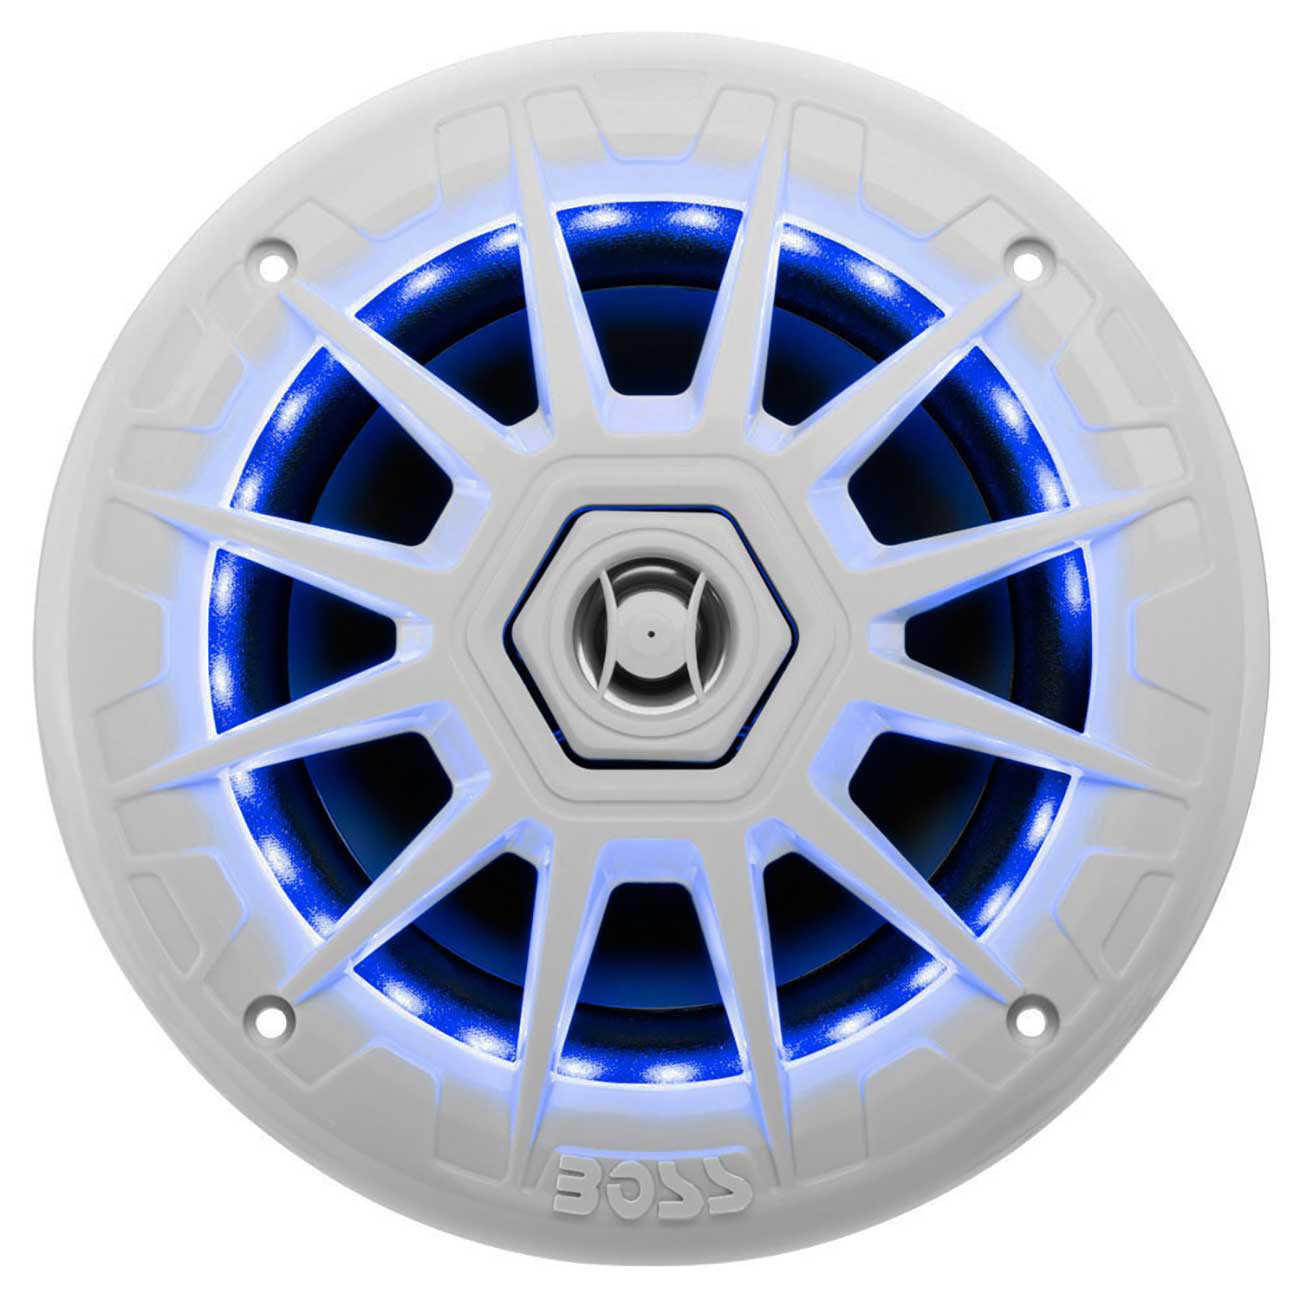 Boss Audio Marine 6.5” 2-way Speaker With Rgb Led Illumination (white)